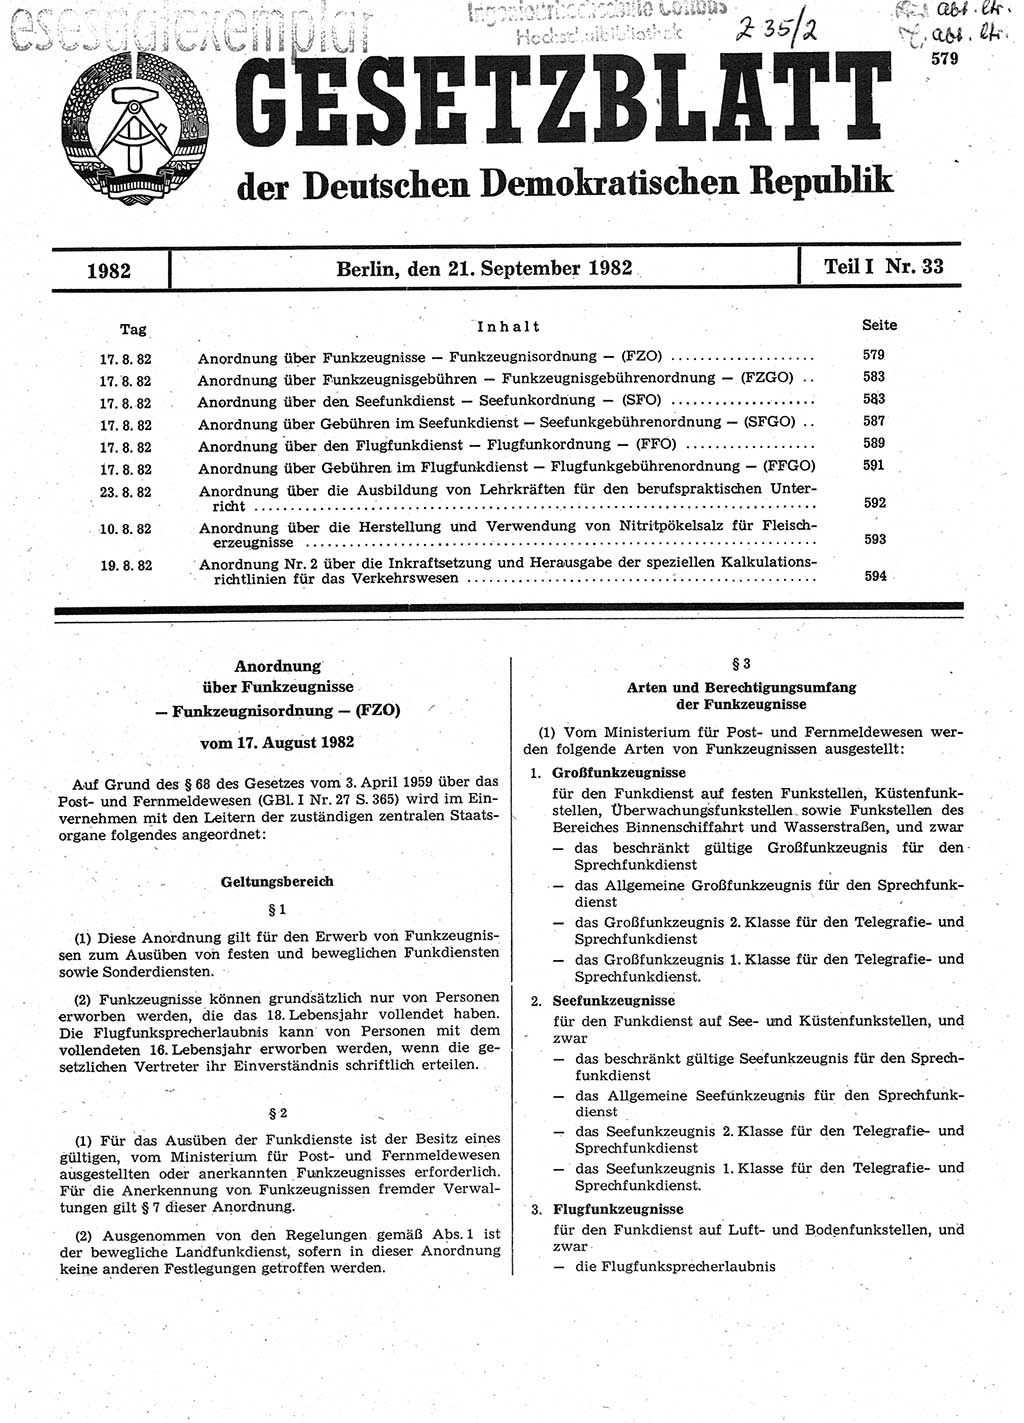 Gesetzblatt (GBl.) der Deutschen Demokratischen Republik (DDR) Teil Ⅰ 1982, Seite 579 (GBl. DDR Ⅰ 1982, S. 579)